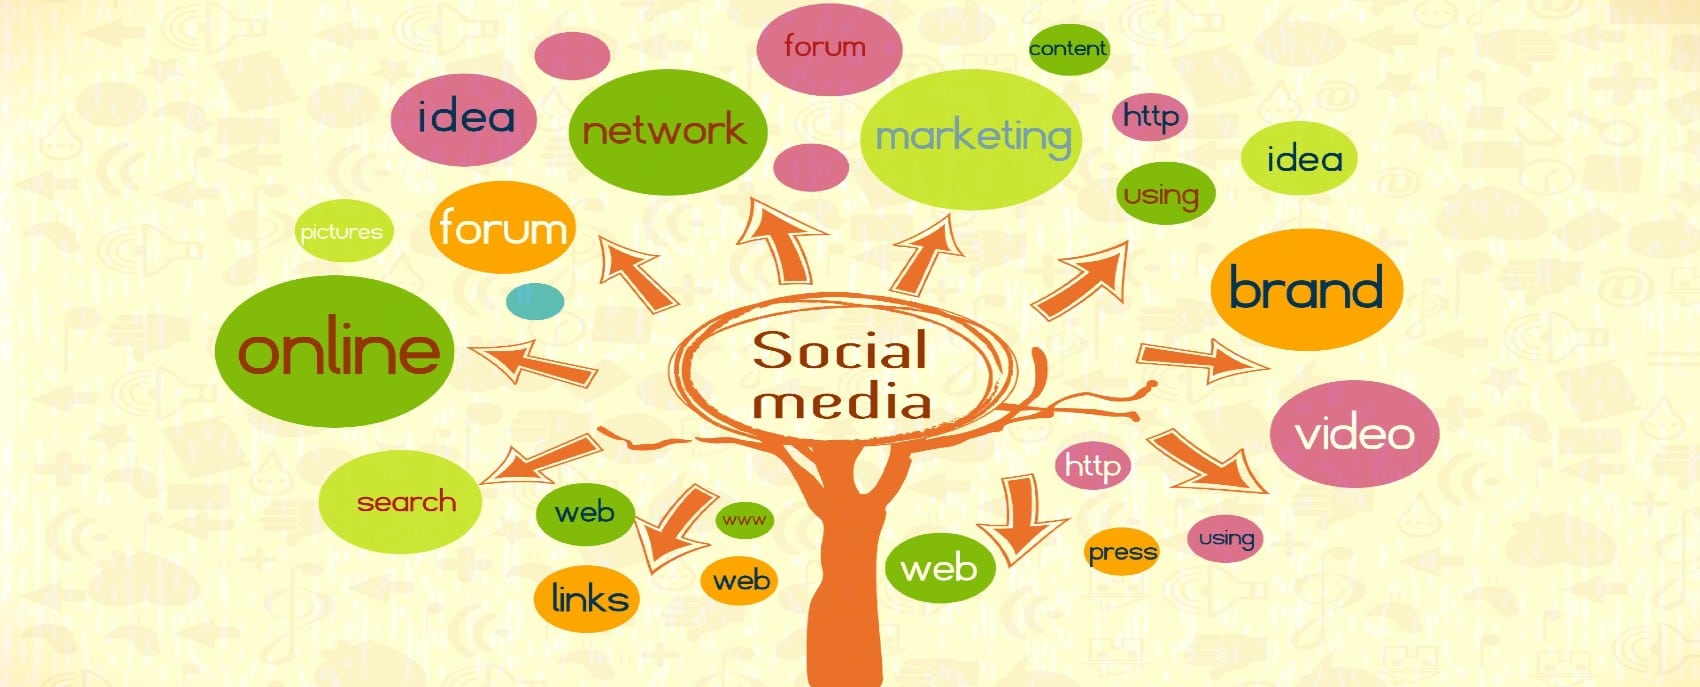 social media tree image